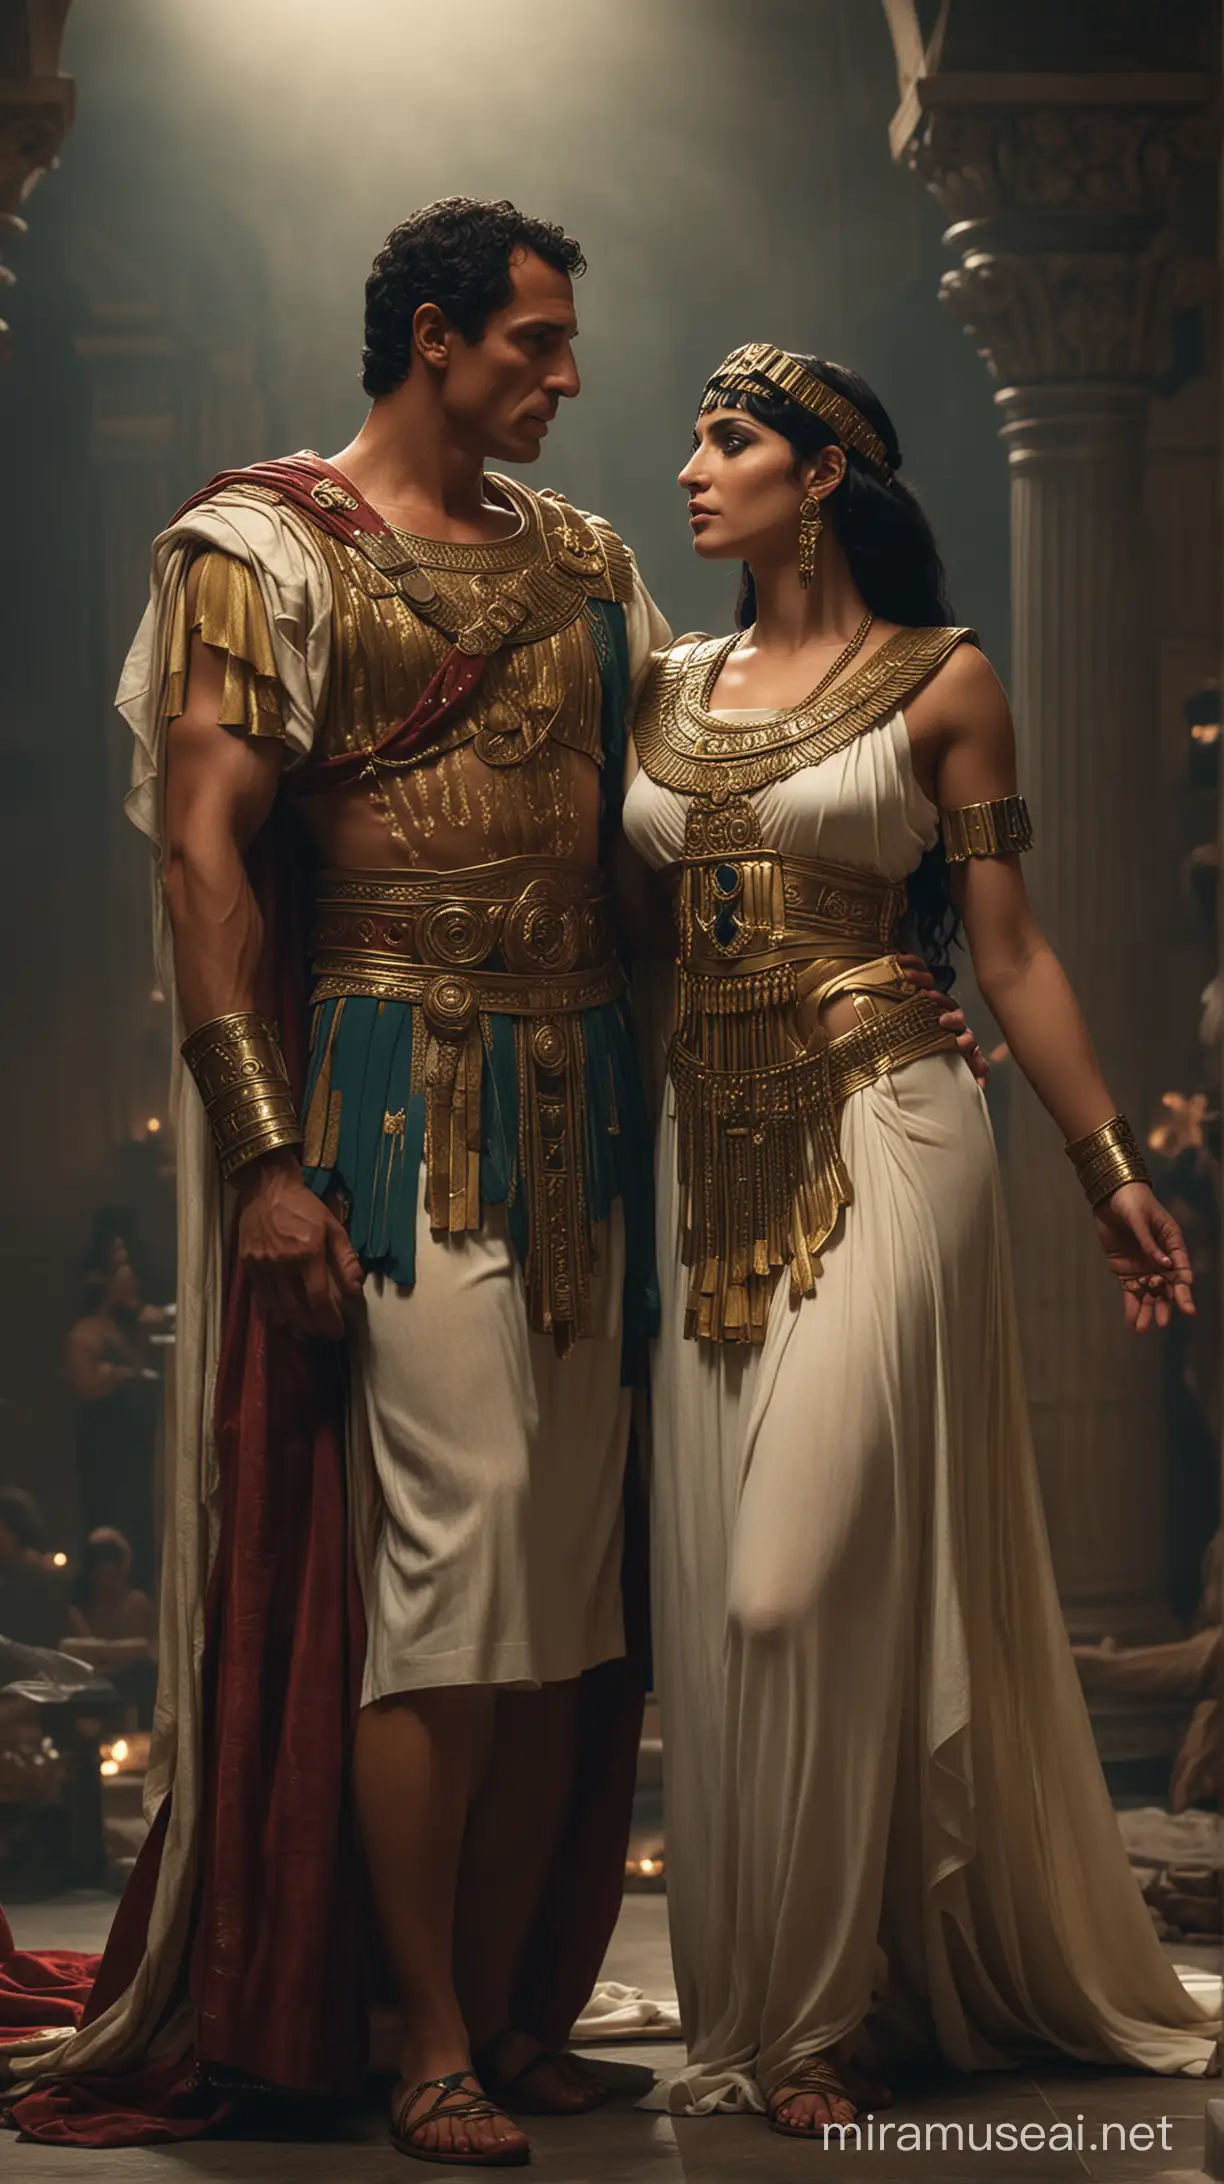 Roman Marc Antony having lavish life style with cleopatra in a moody background